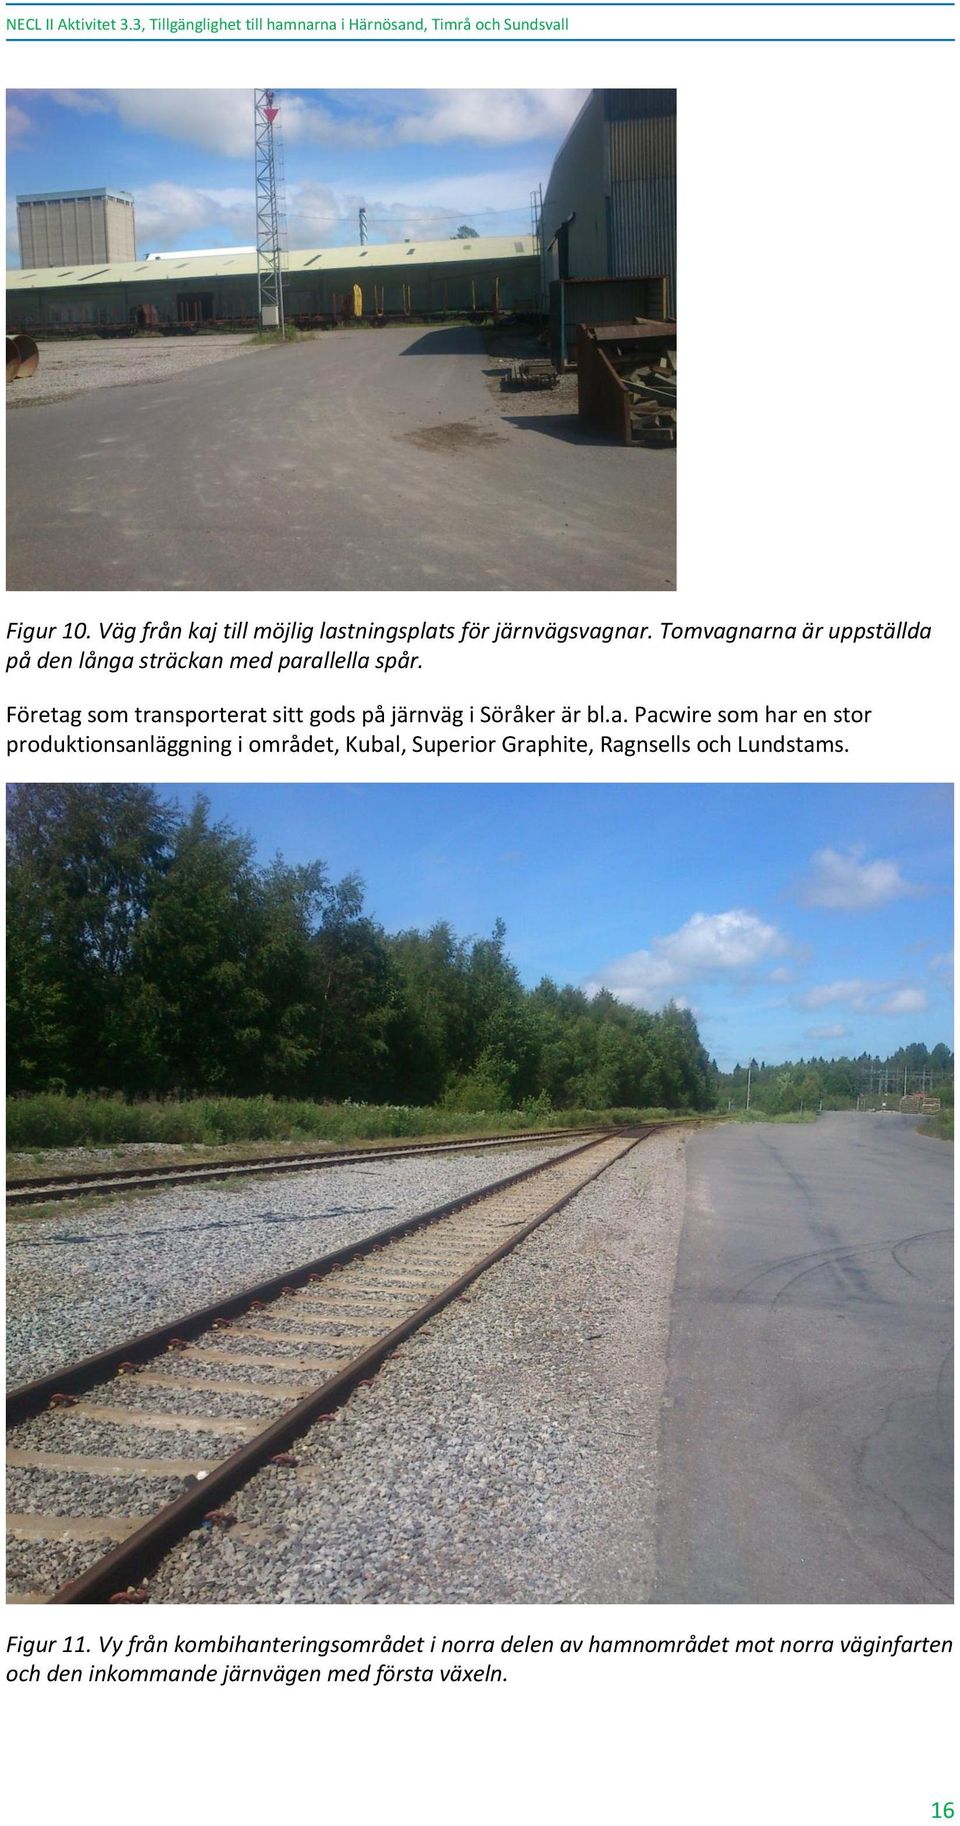 Företag som transporterat sitt gods på järnväg i Söråker är bl.a. Pacwire som har en stor produktionsanläggning i området, Kubal, Superior Graphite, Ragnsells och Lundstams.